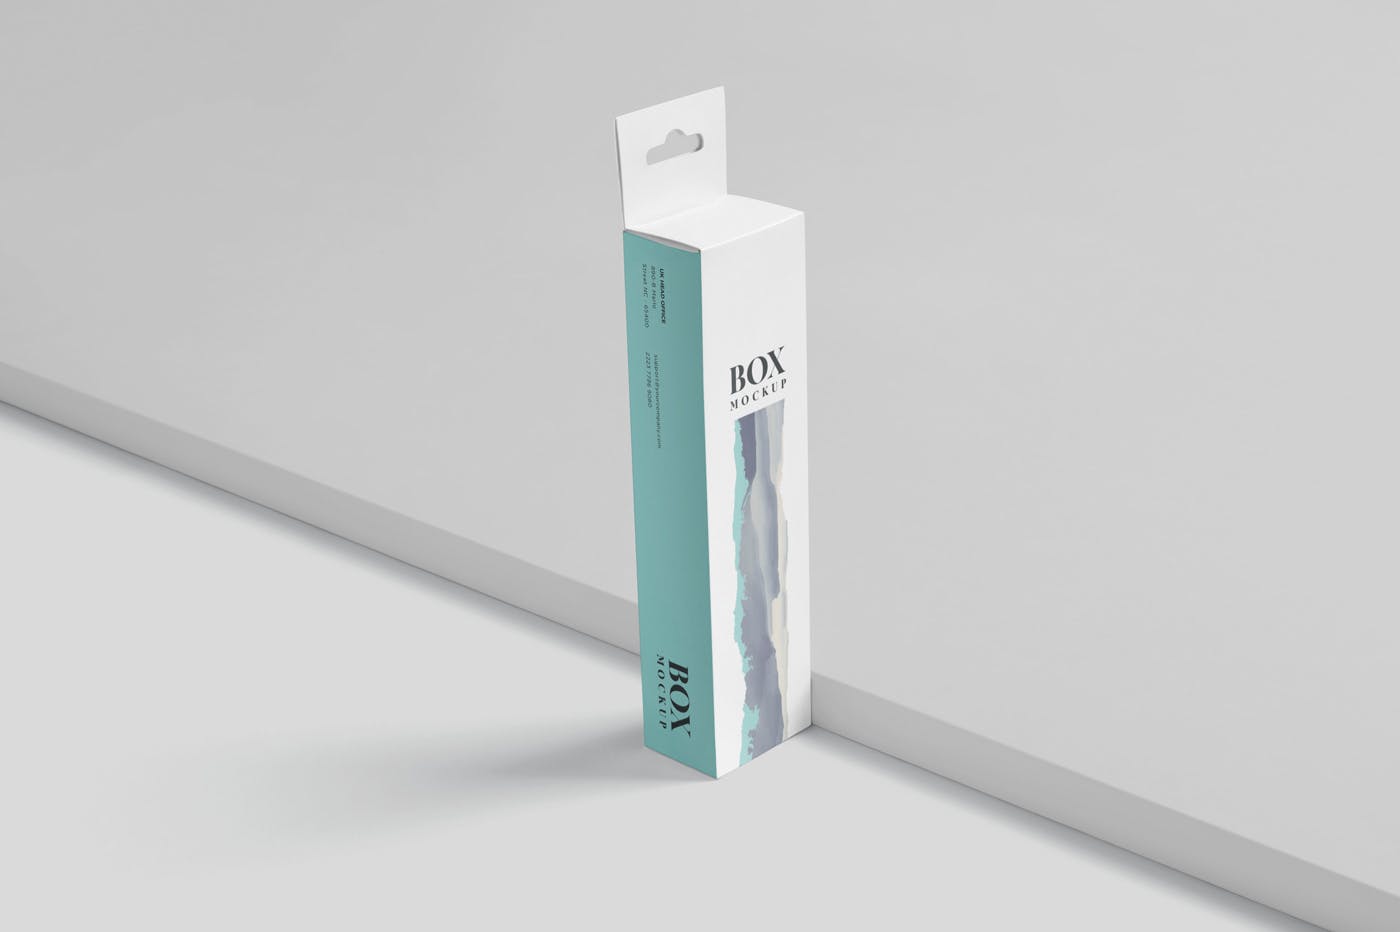 超薄矩形长条包装盒外观设计效果图大洋岛精选 Box Mockup PSDs – High Slim Rectangle Size Hanger插图2